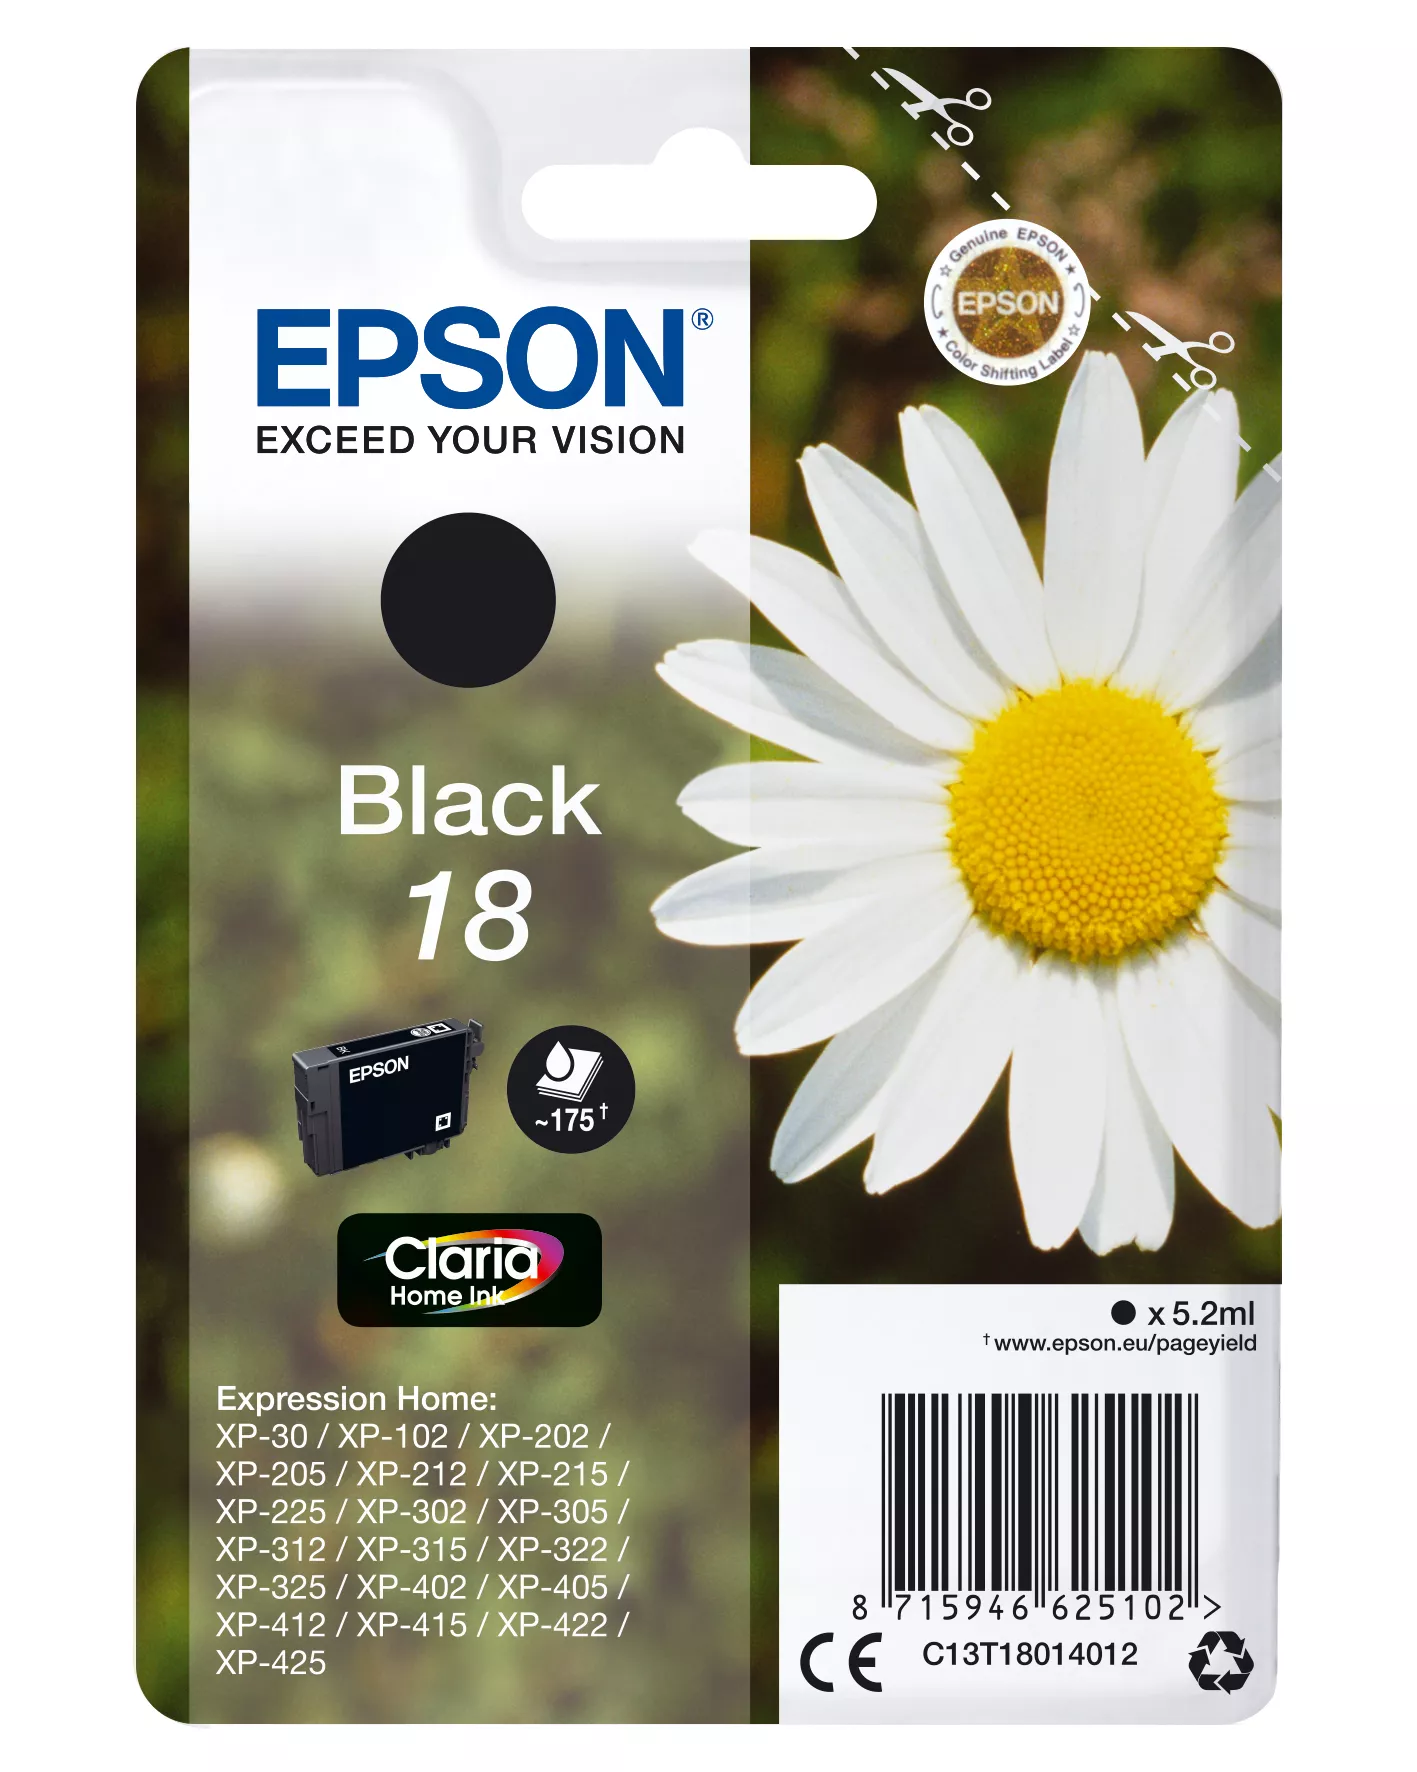 Achat EPSON 18 cartouche d encre noir capacité standard 5.2ml 175 - 8715946625102